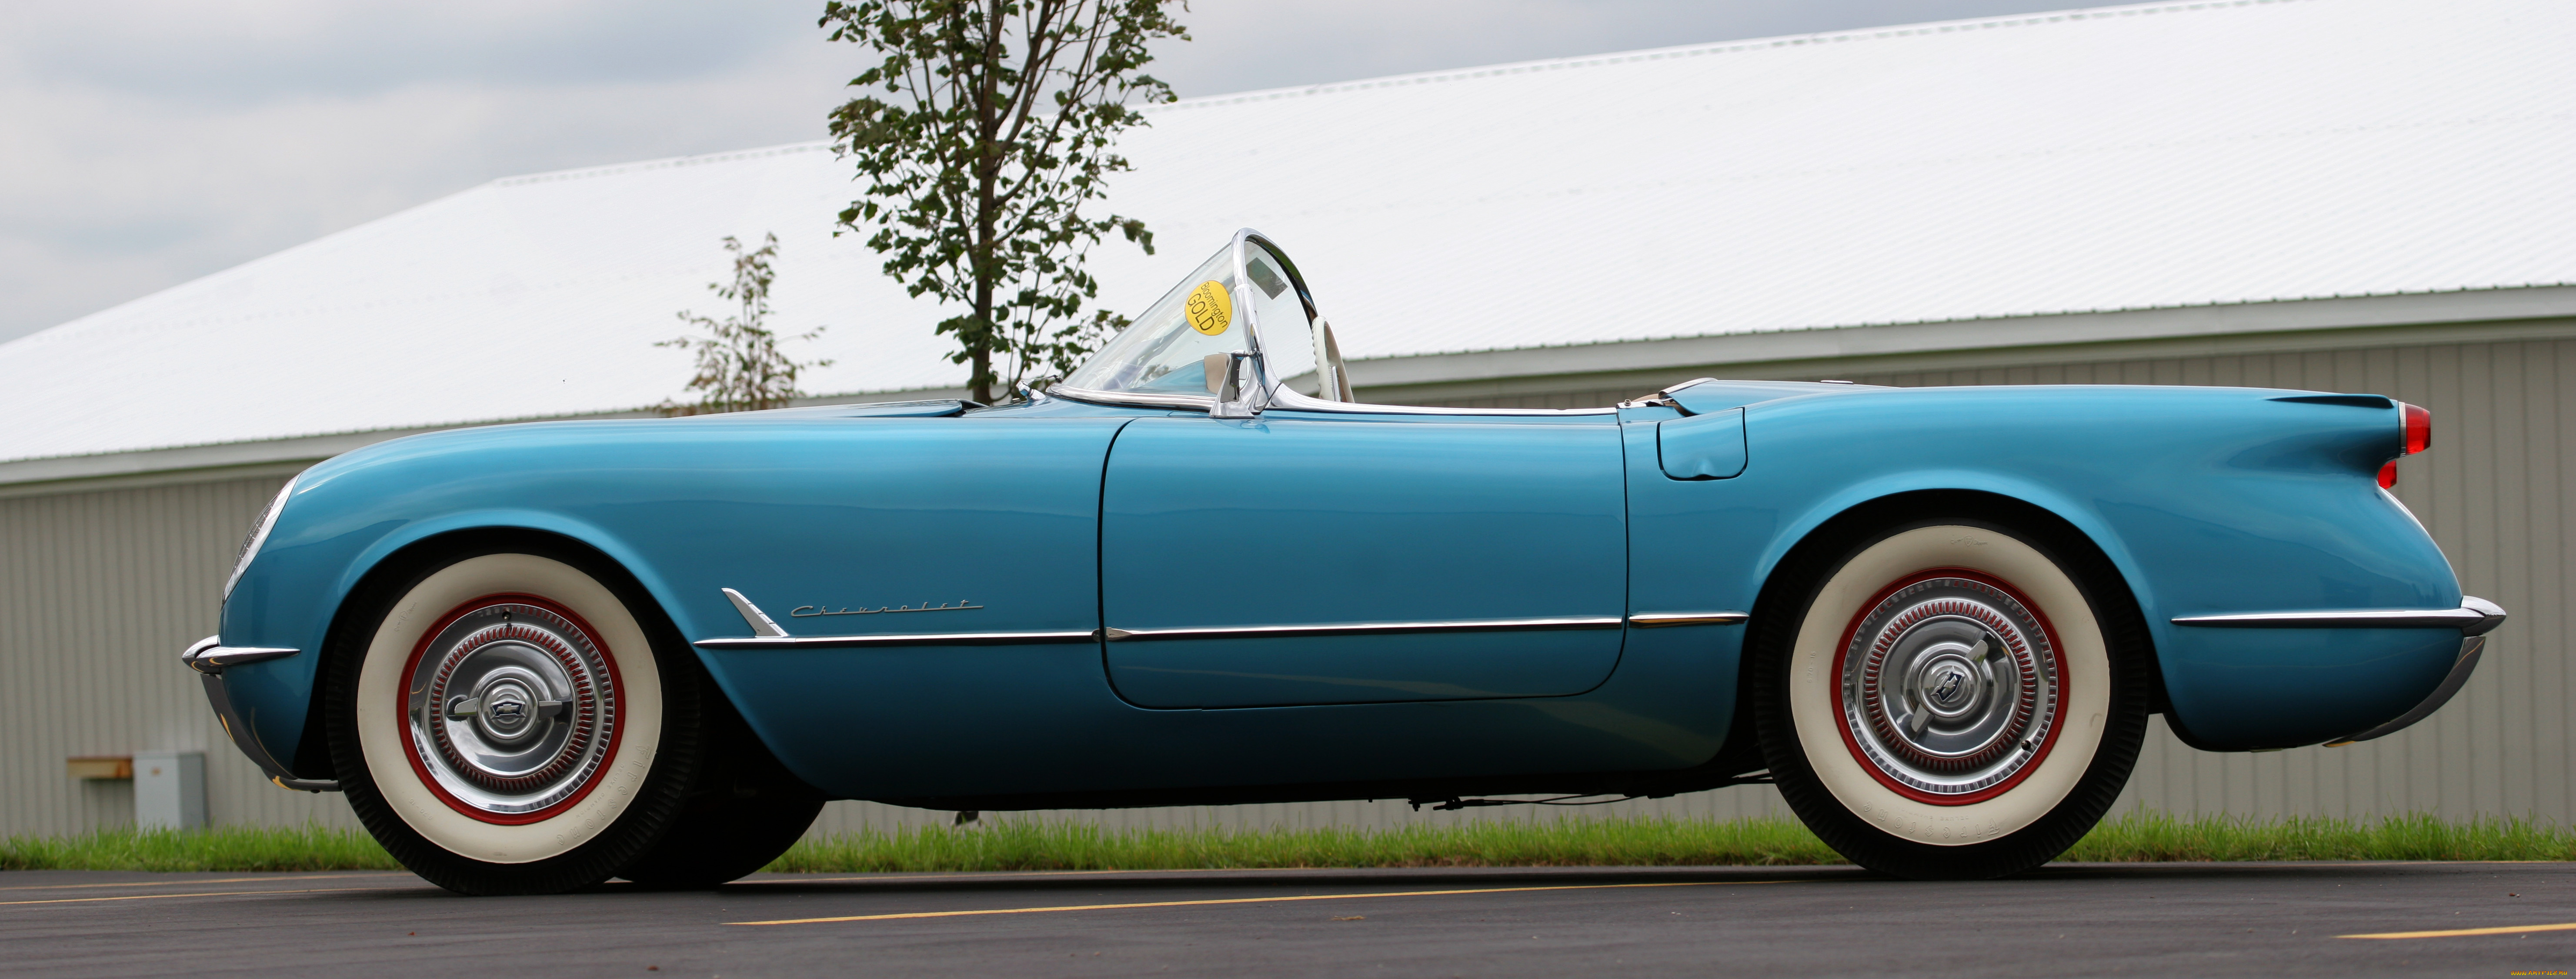 1954, corvette, roadster, автомобили, спортивная, авто, модель